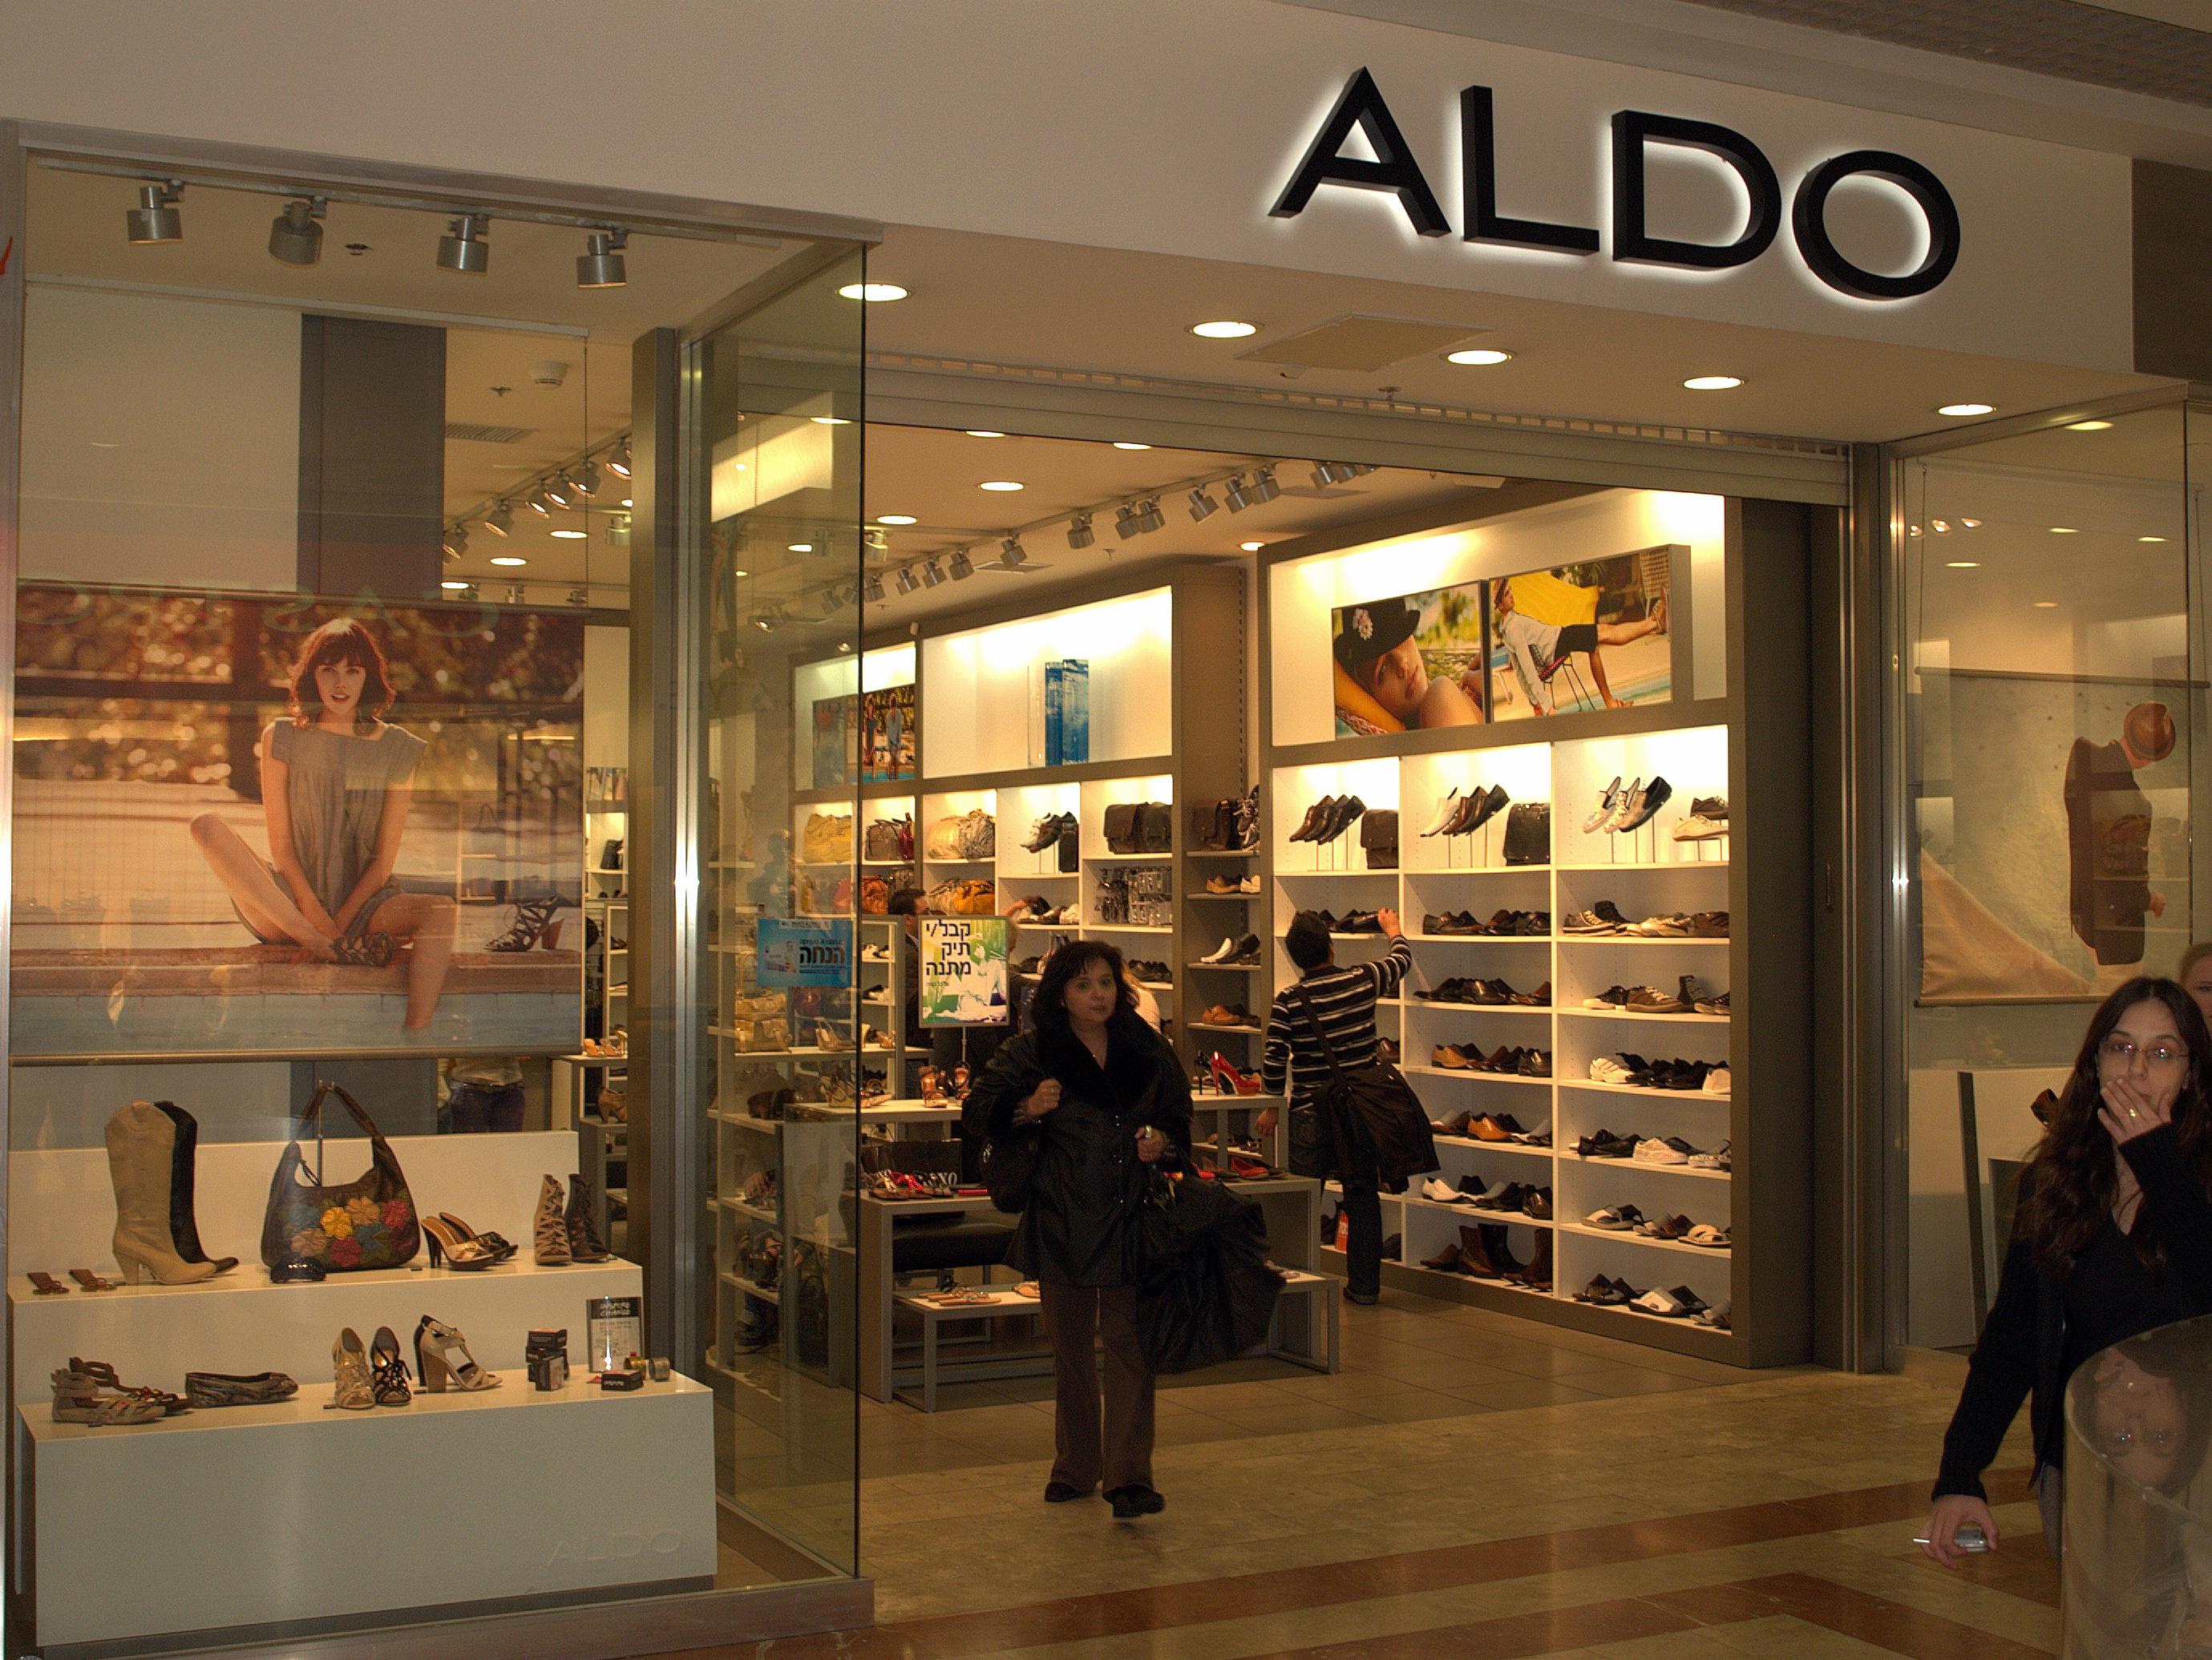 Download this Description Aldo Shoe Store Tel Aviv Israel picture